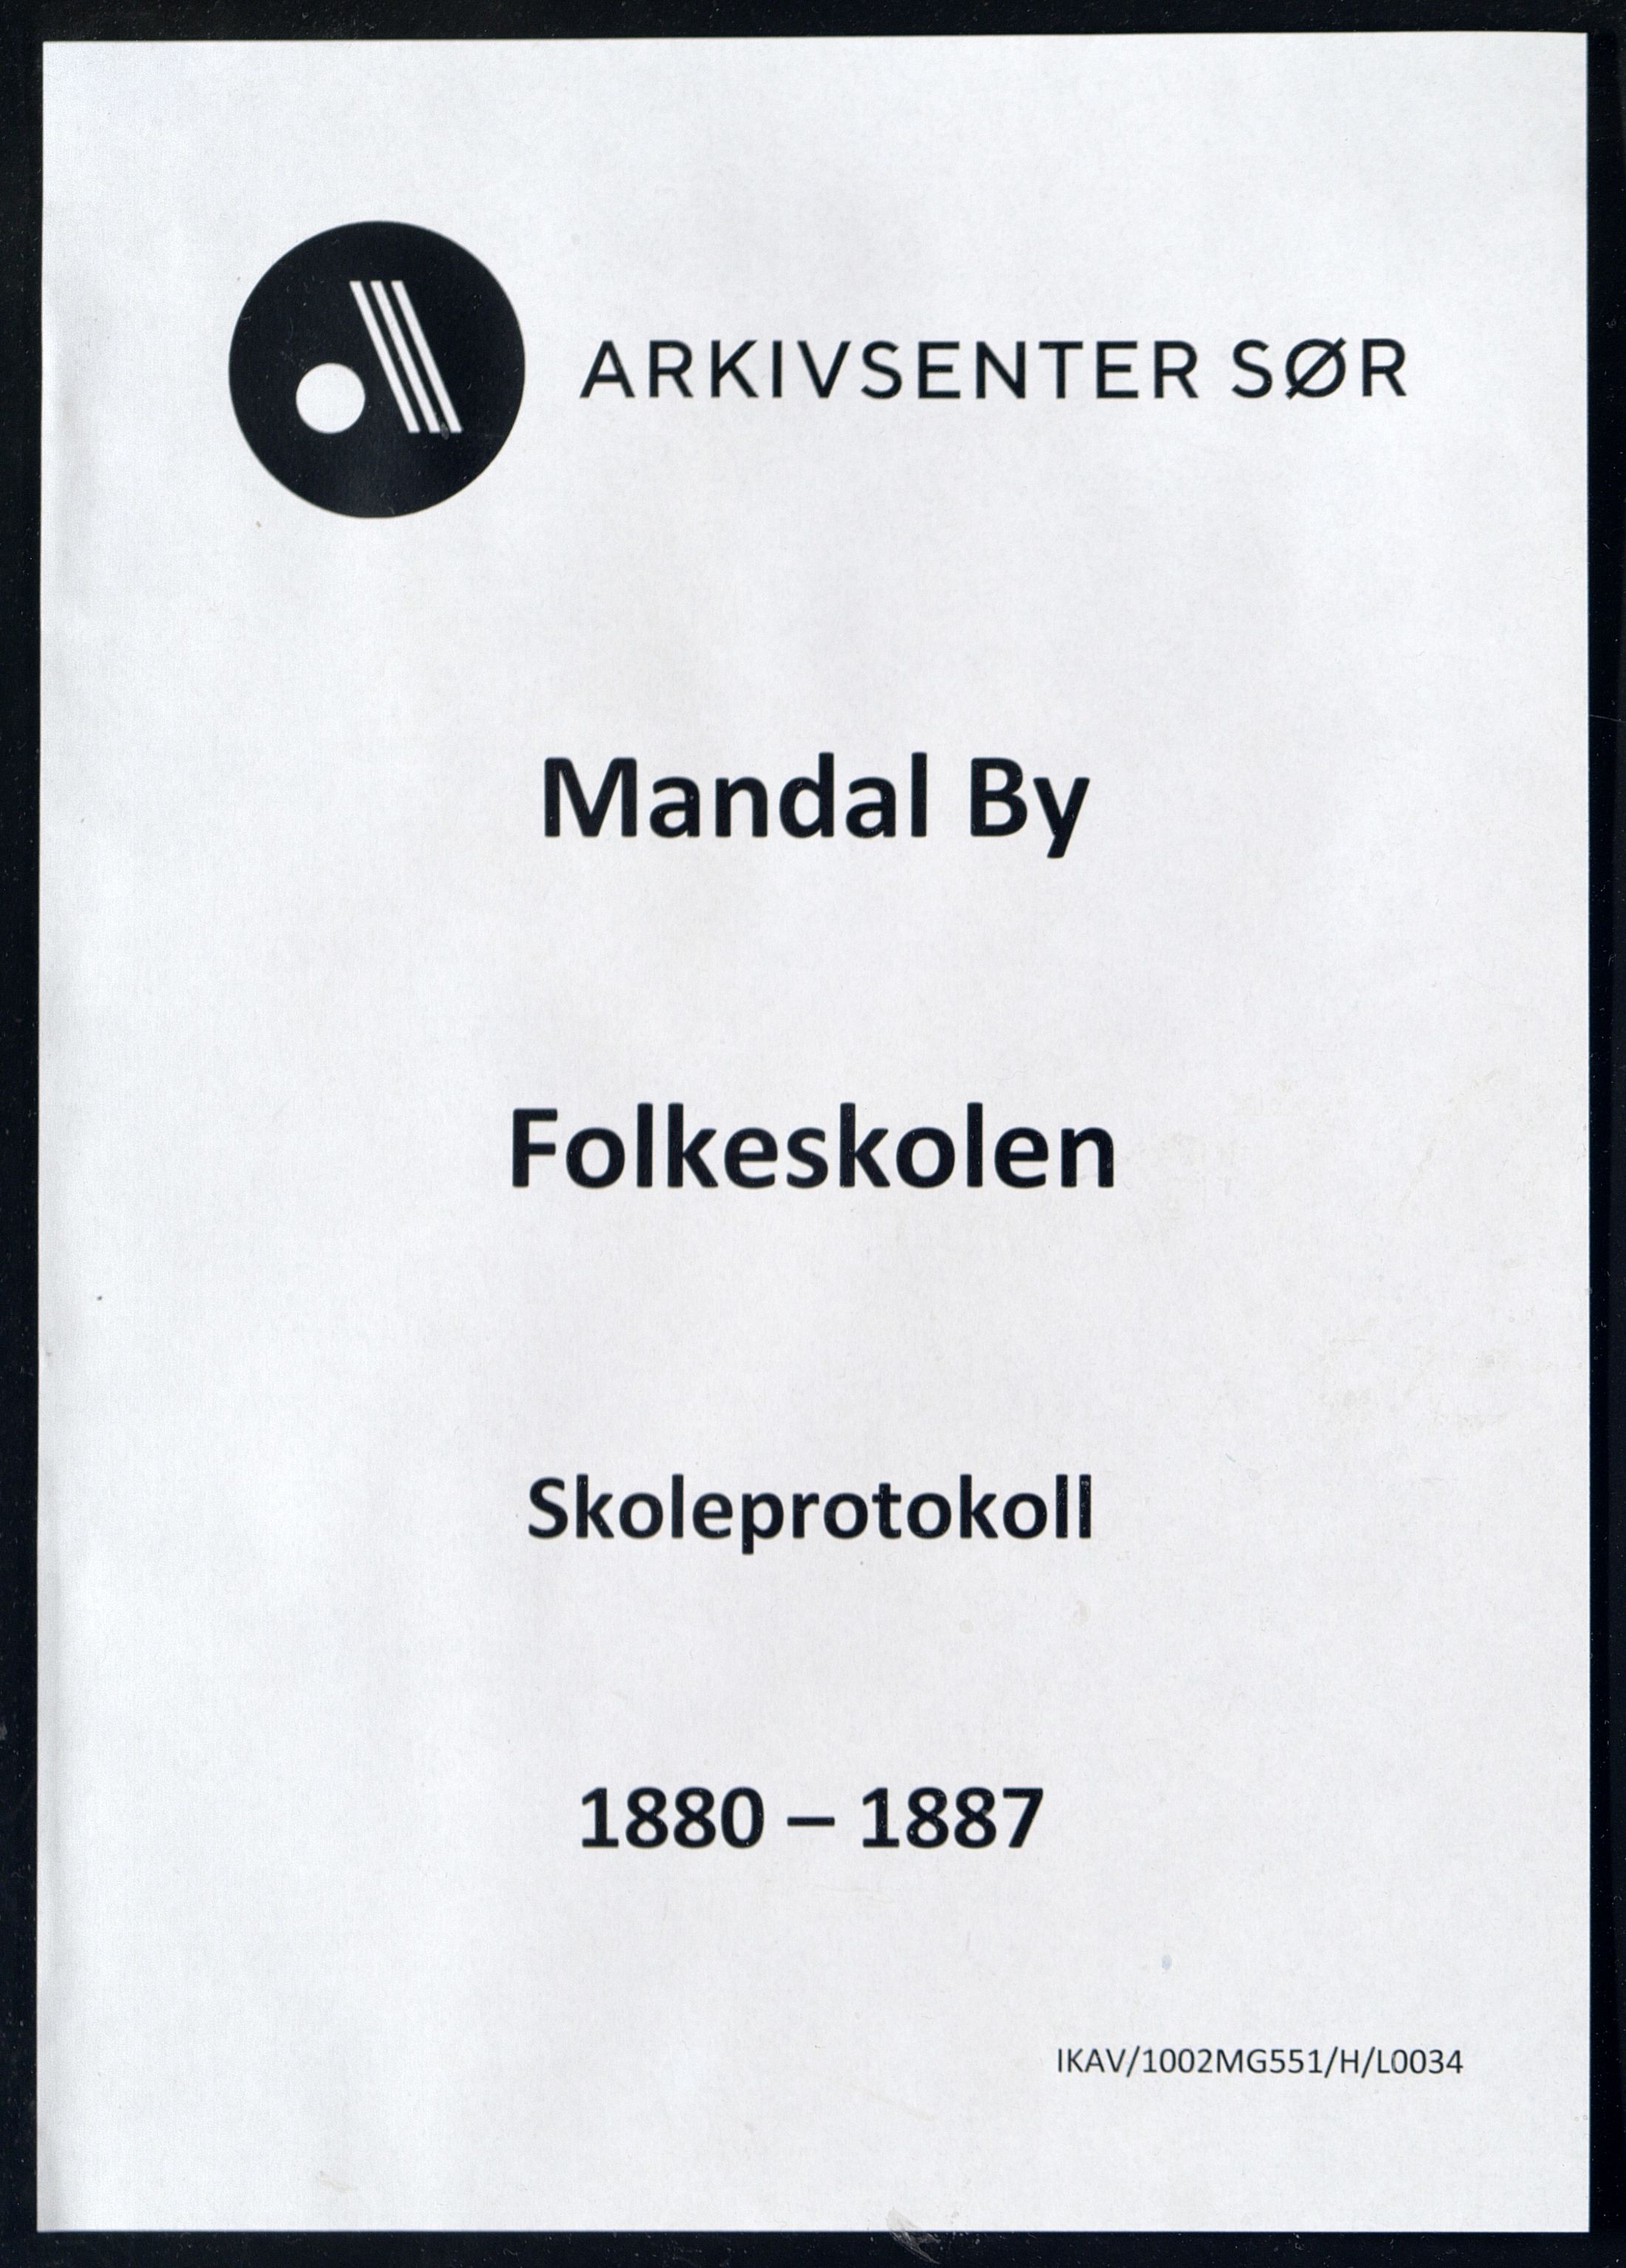 Mandal By - Mandal Allmueskole/Folkeskole/Skole, IKAV/1002MG551/H/L0034: Skoleprotokoll, 1880-1887